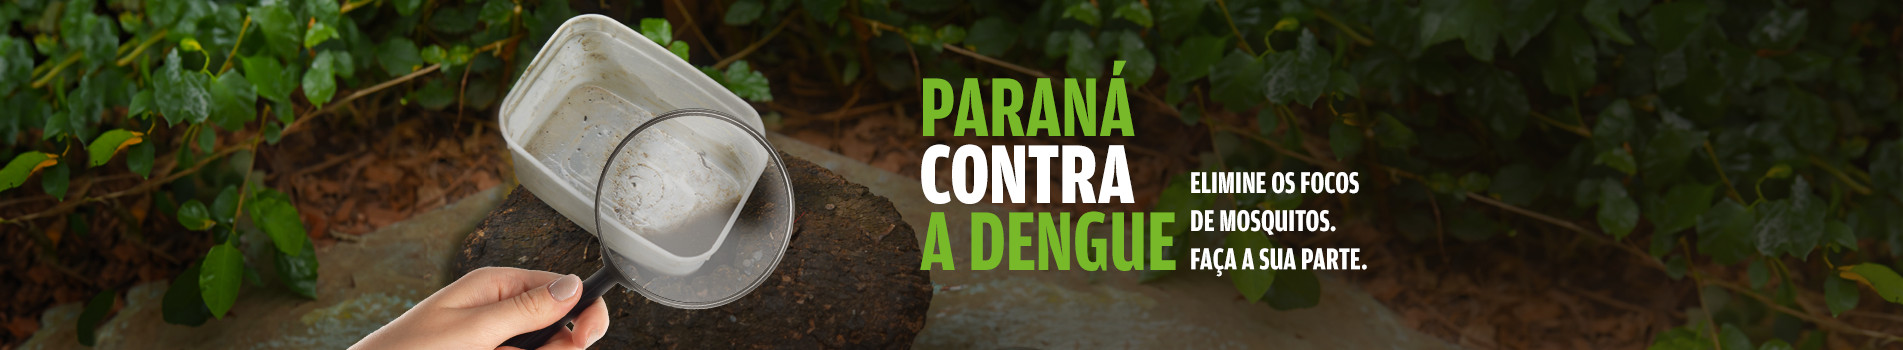 Paraná contra Dengue Elimine os focos do mosquito. faça sua parte